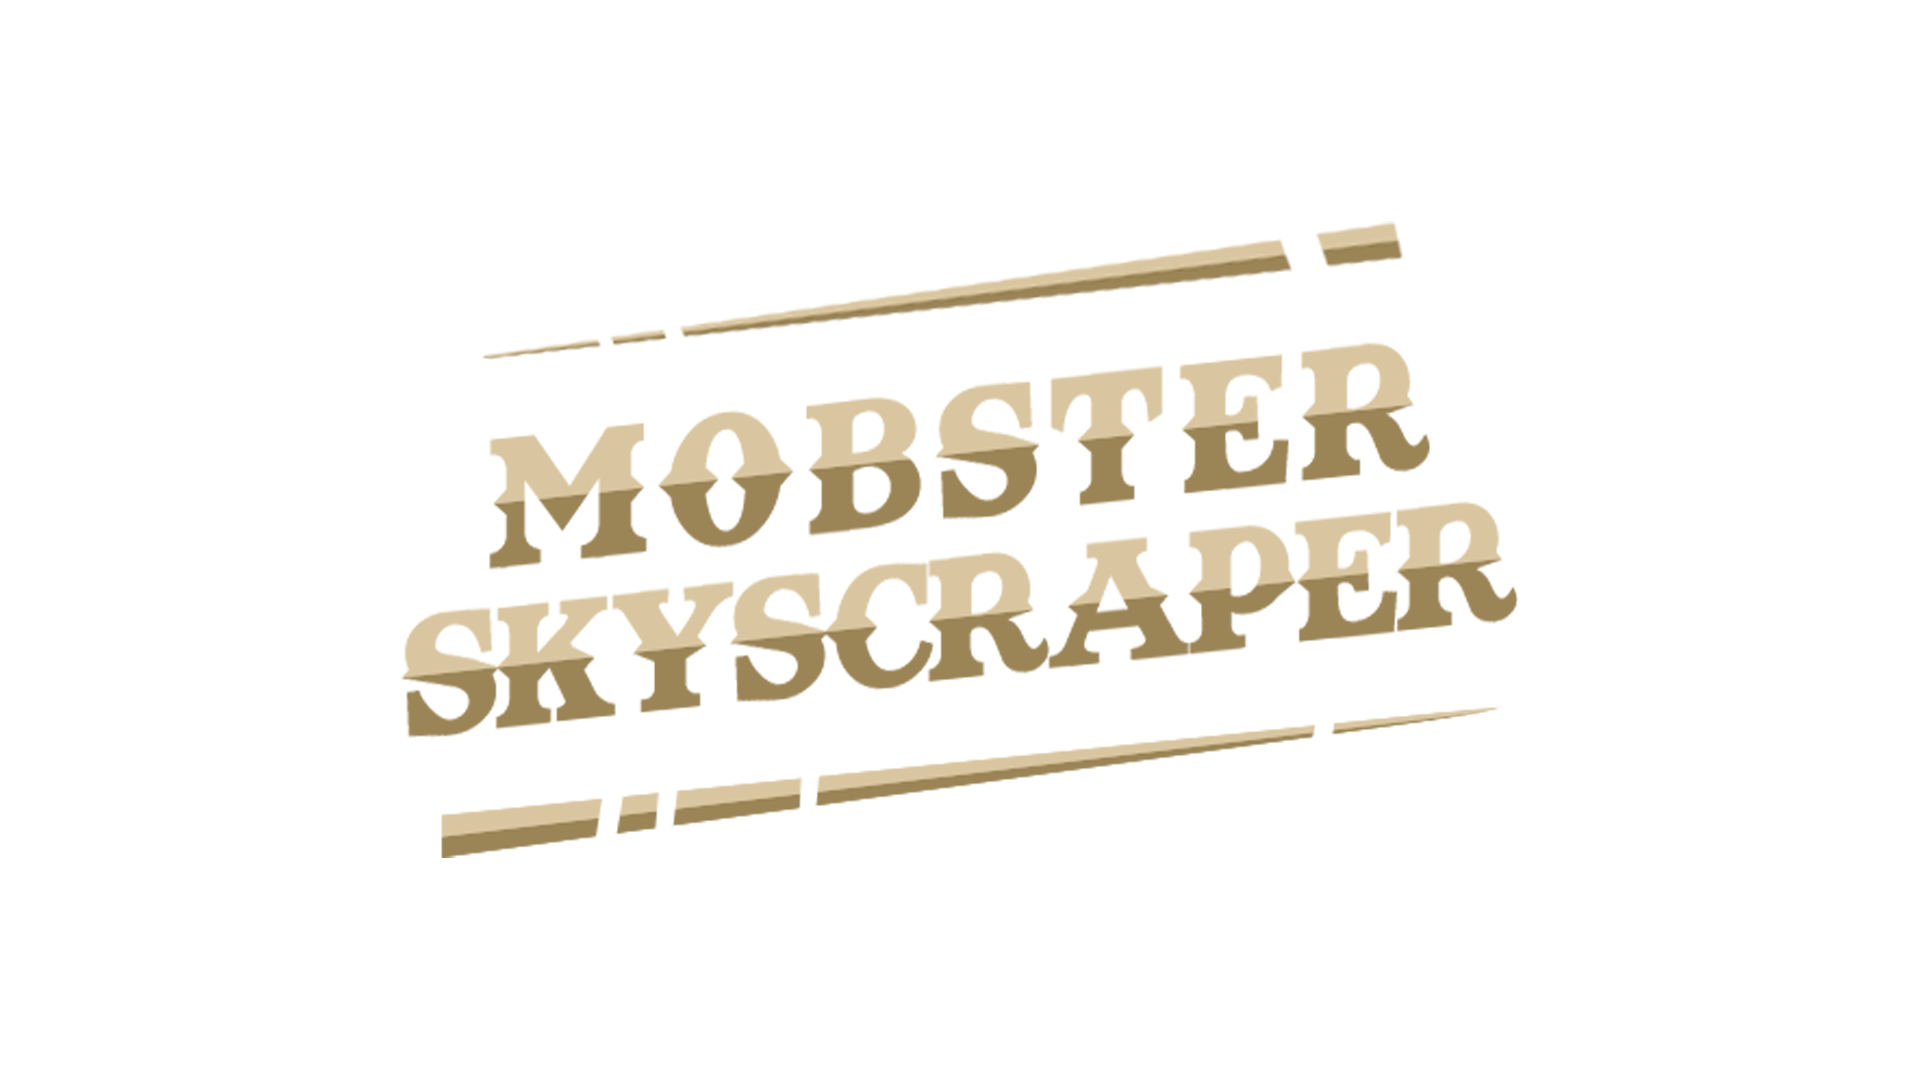 Mobster Skyscraper